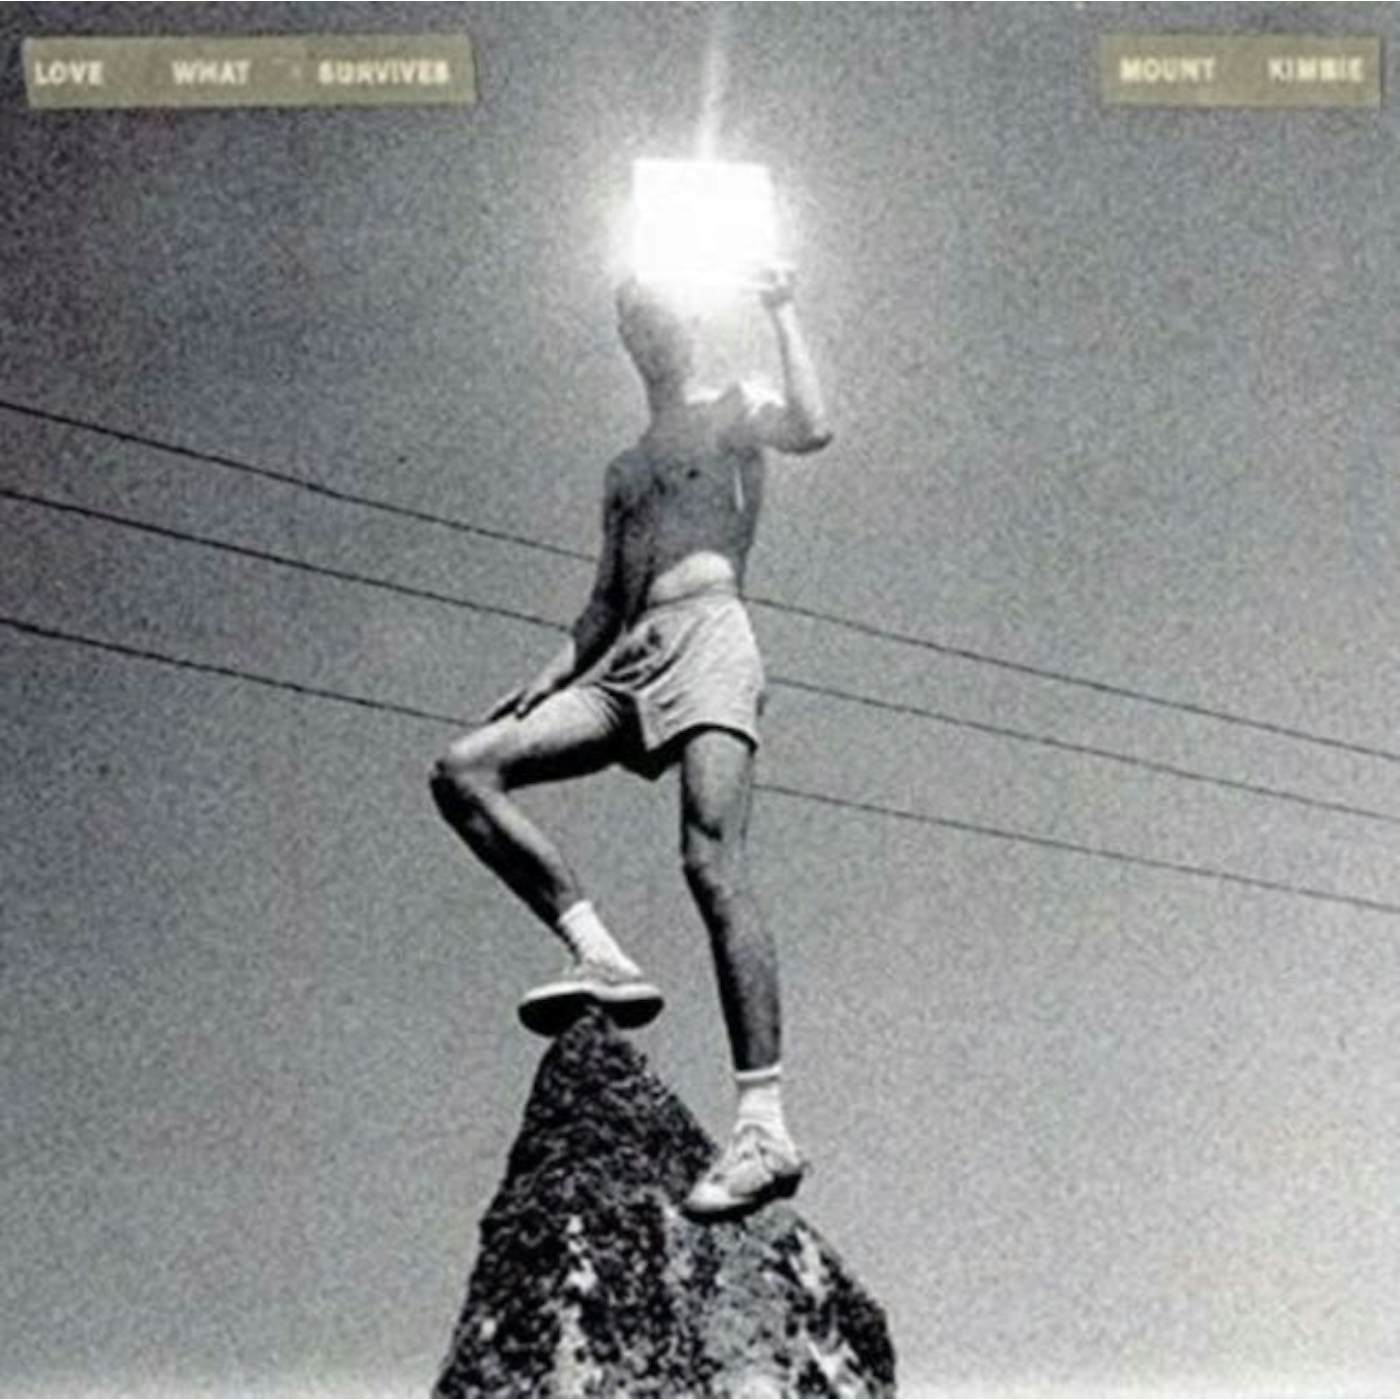 Mount Kimbie LP - Love What Survives (Vinyl)